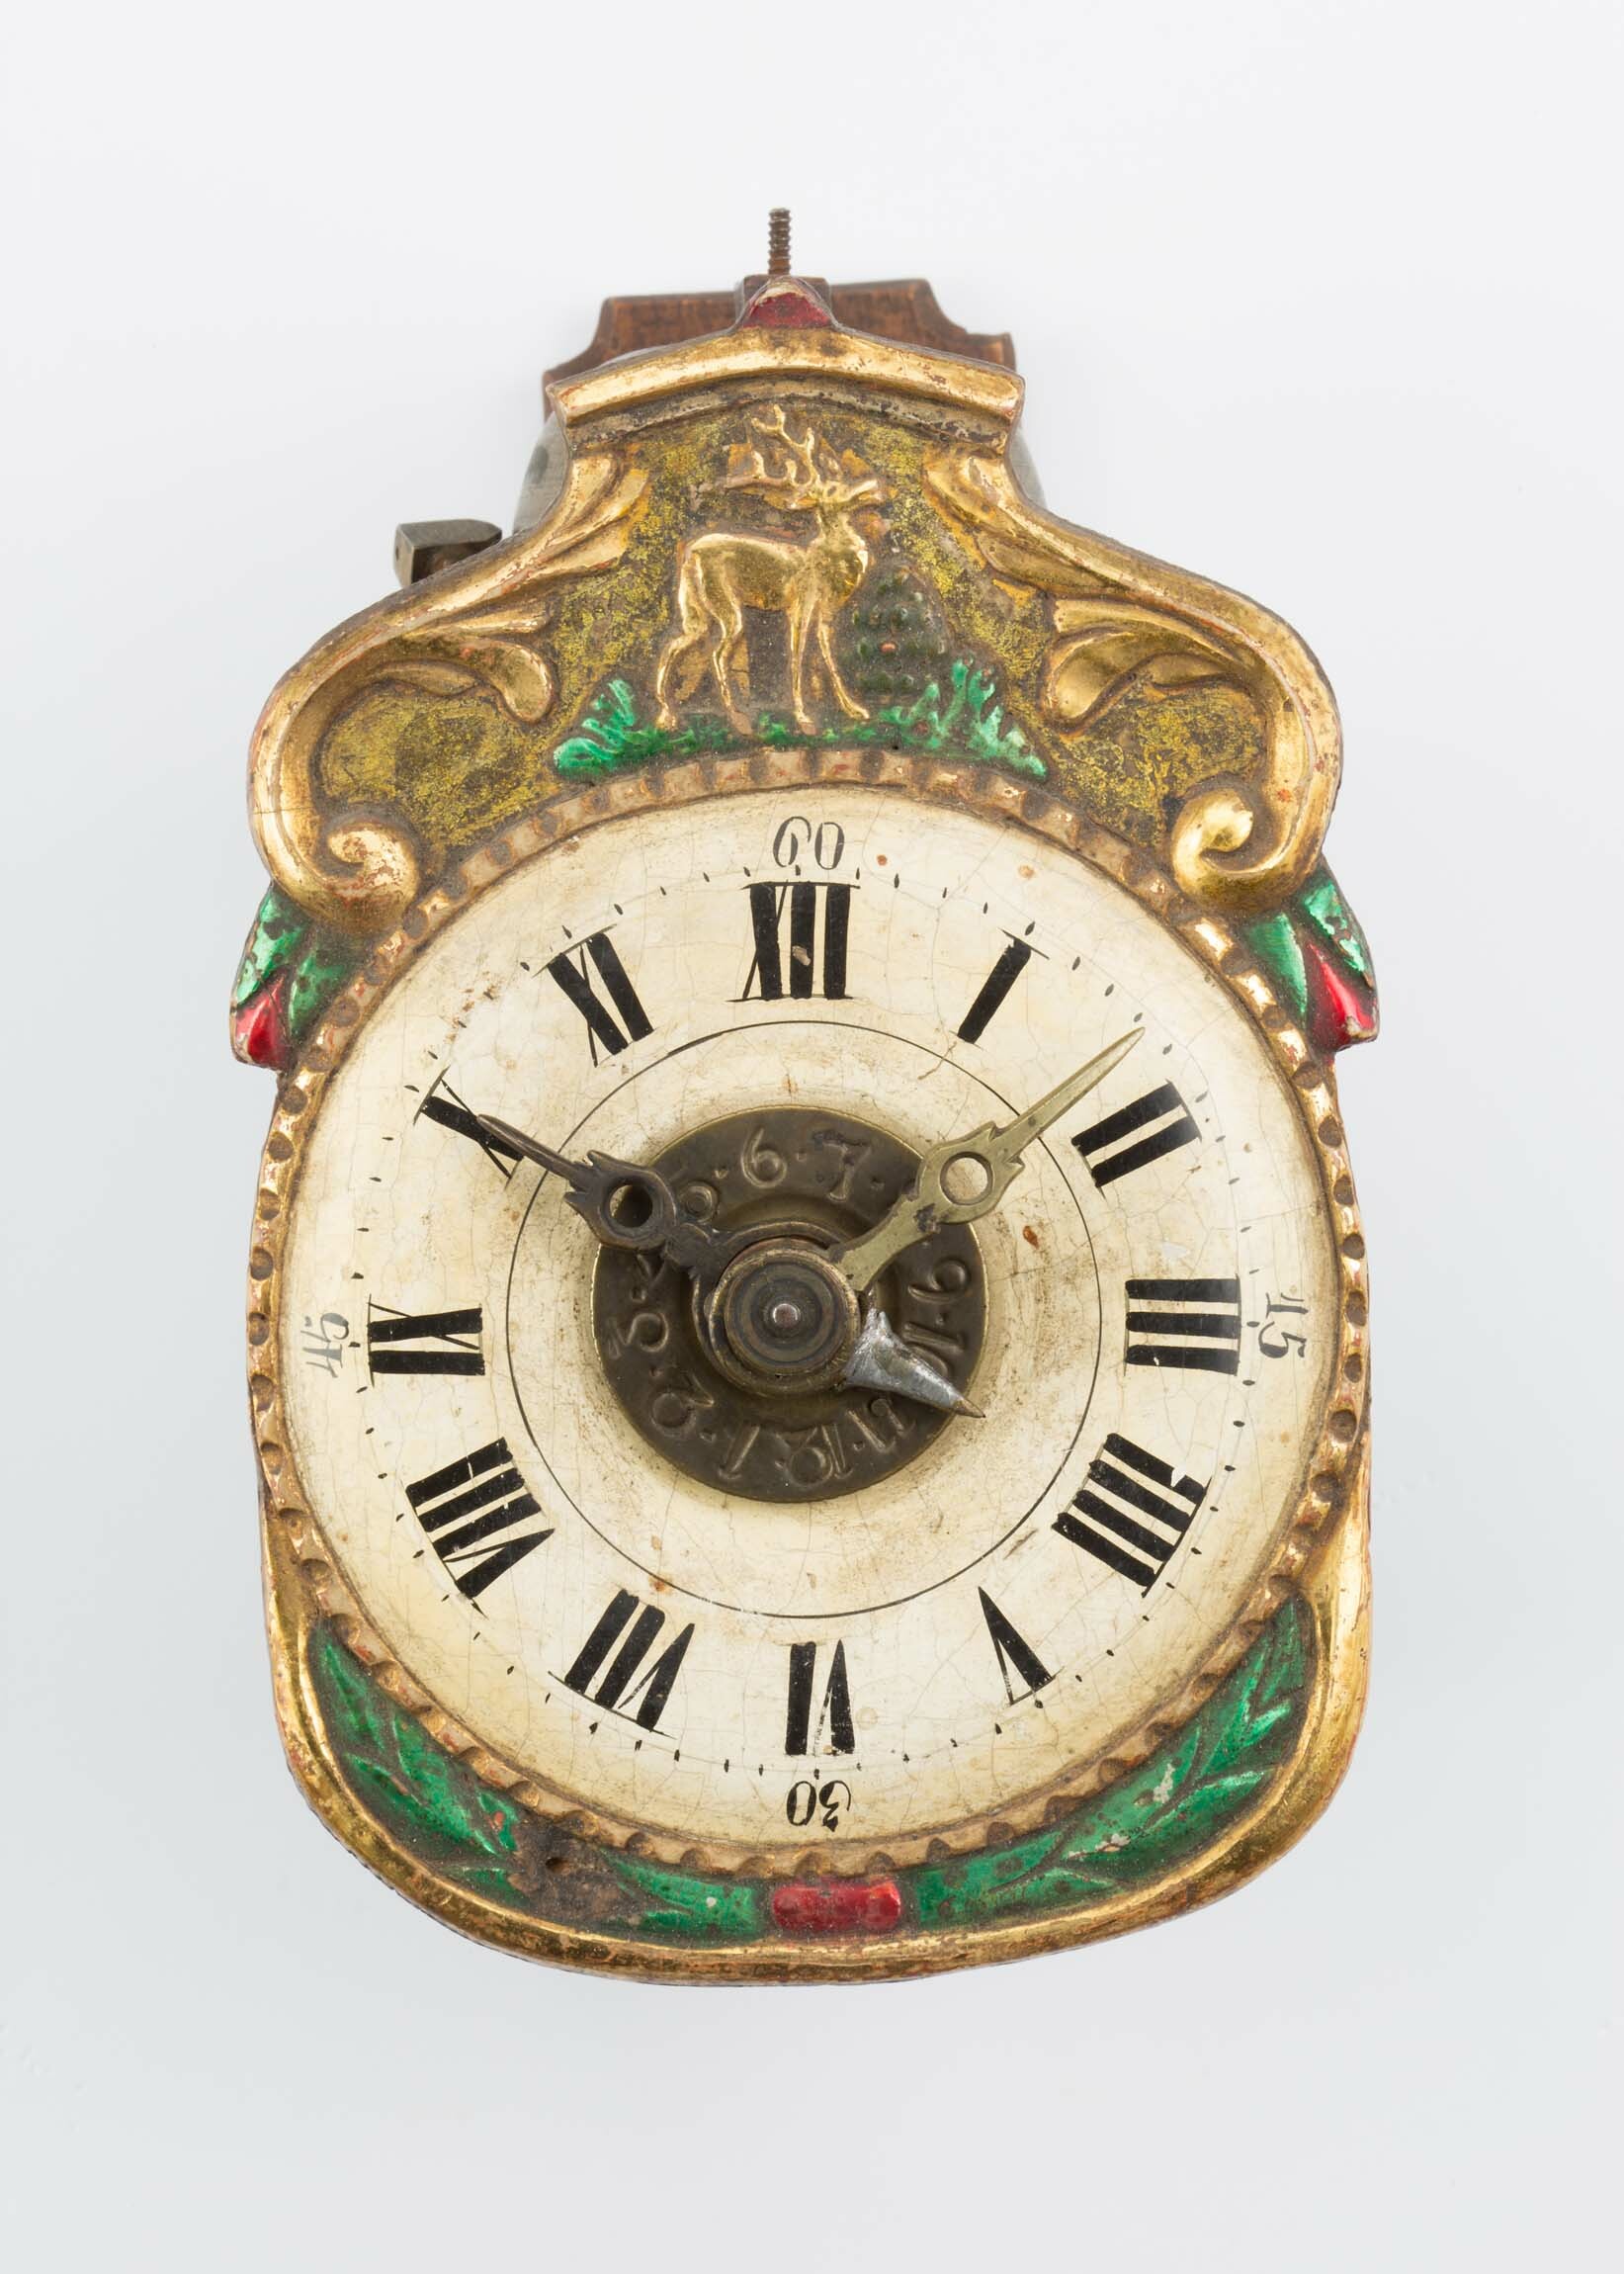 Schottenuhr, Andreas Spiegelhalder, Breitnau, um 1830 (Deutsches Uhrenmuseum CC BY-SA)